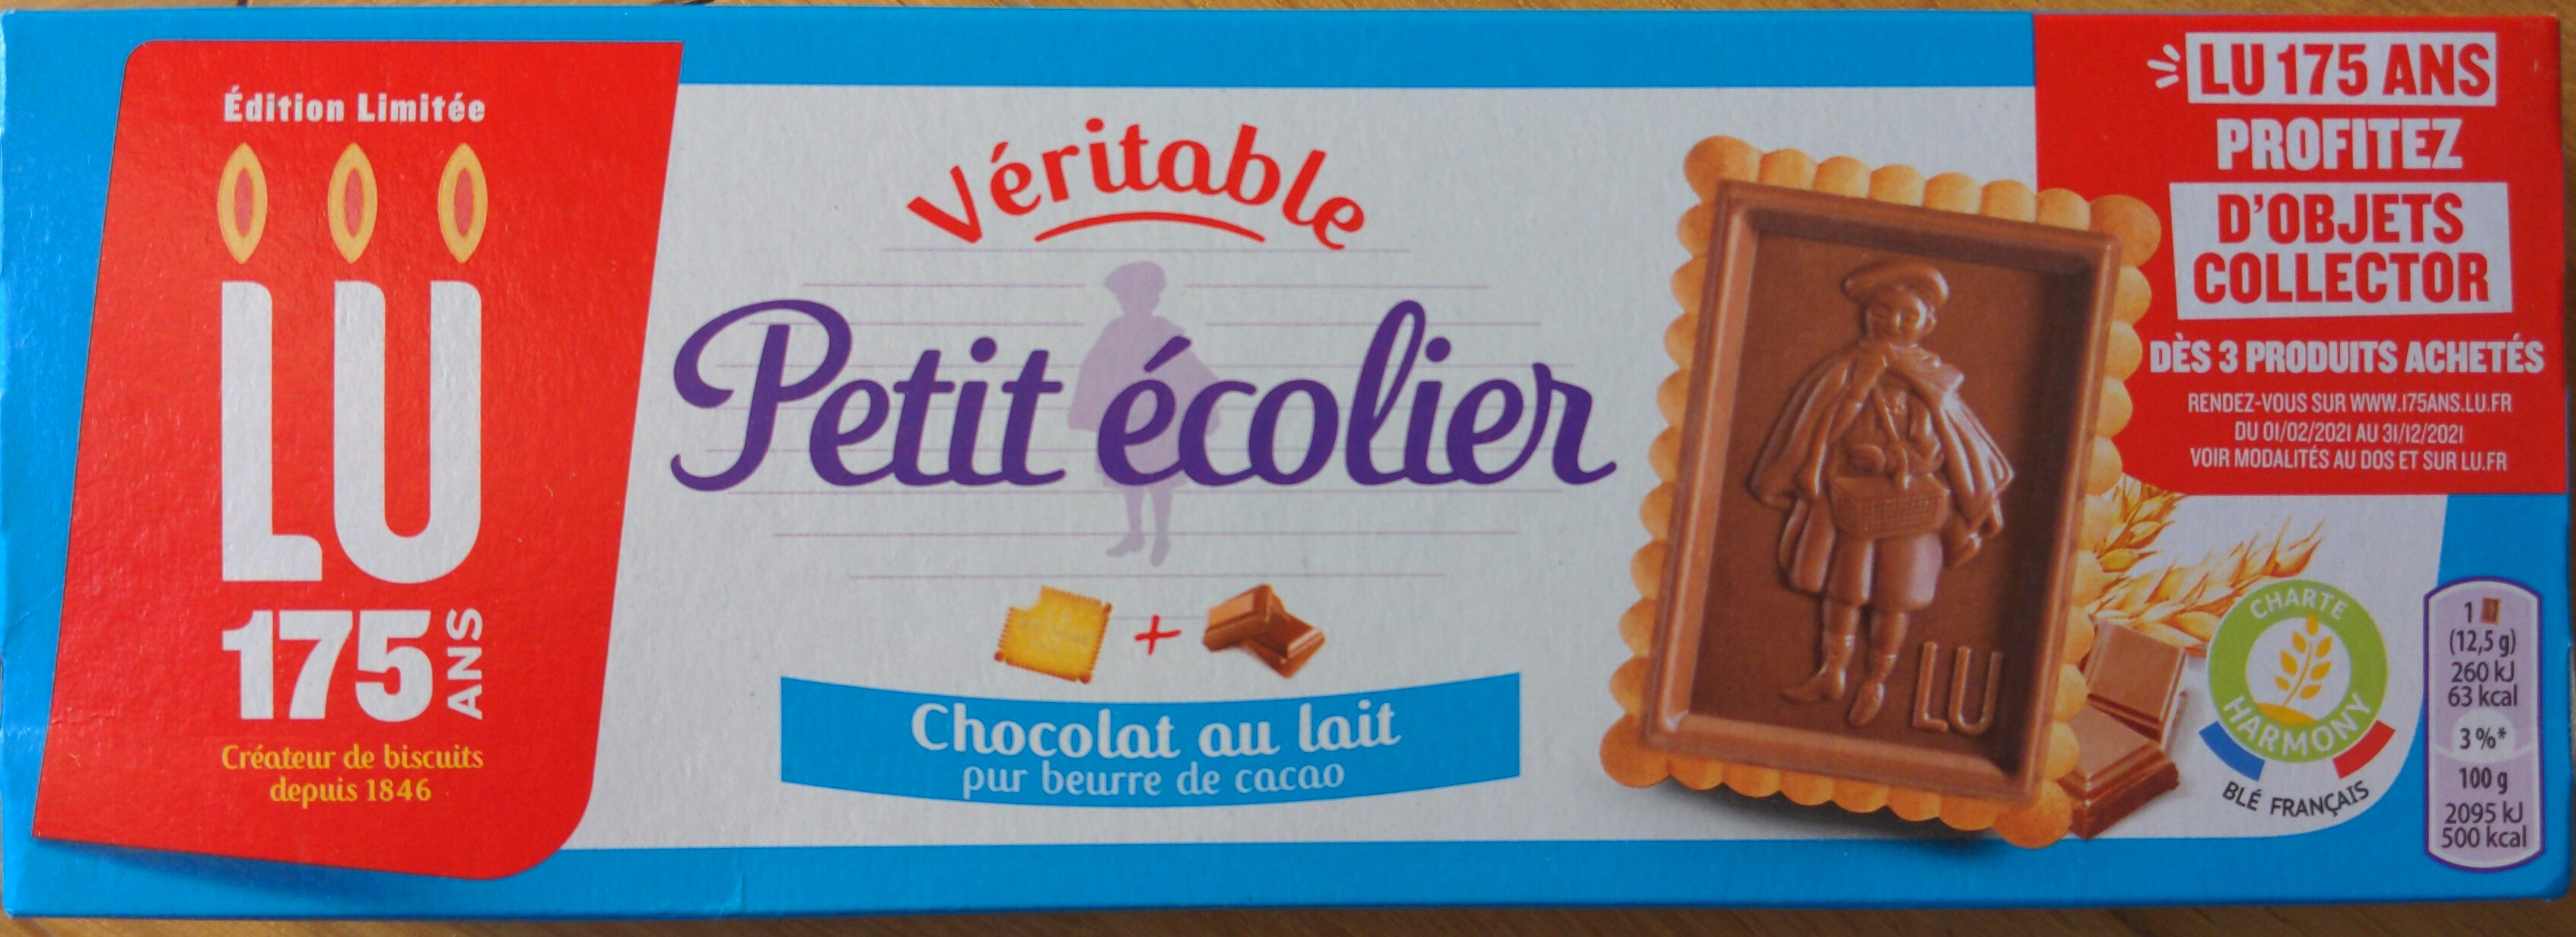 Véritable Petit Écolier Chocolat au Lait - Produkt - fr